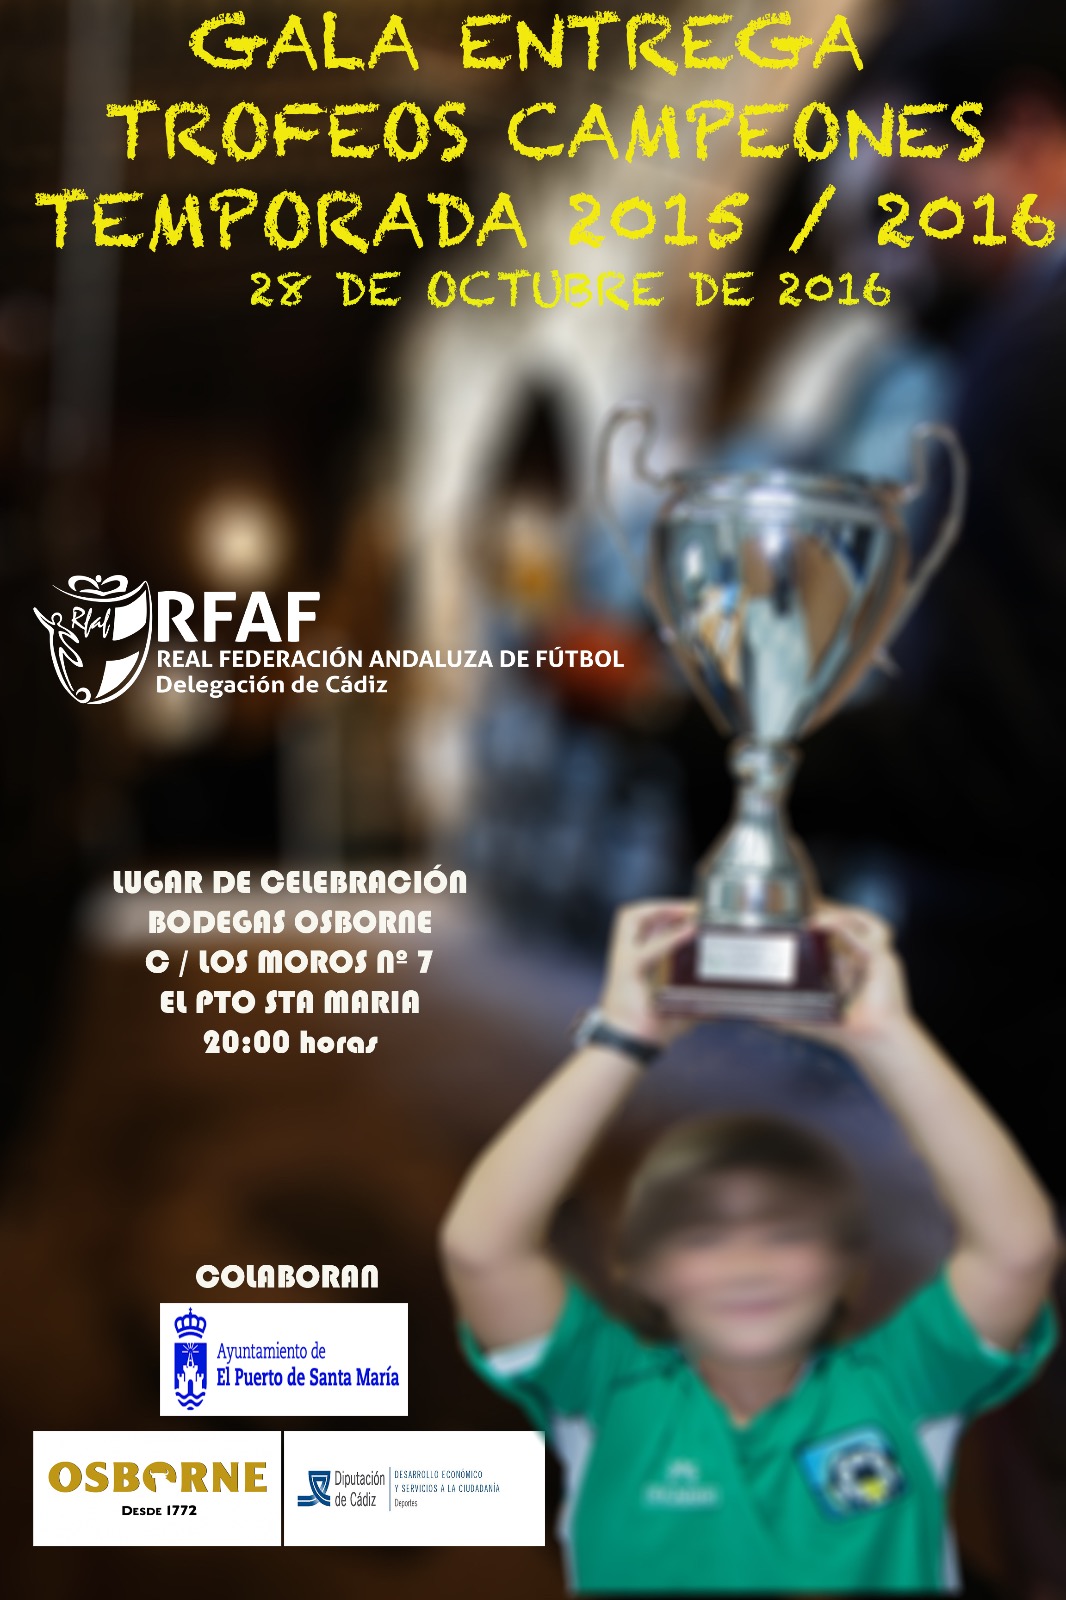 Gala Entrega Trofeos Campeones Temporada 2015/2016.